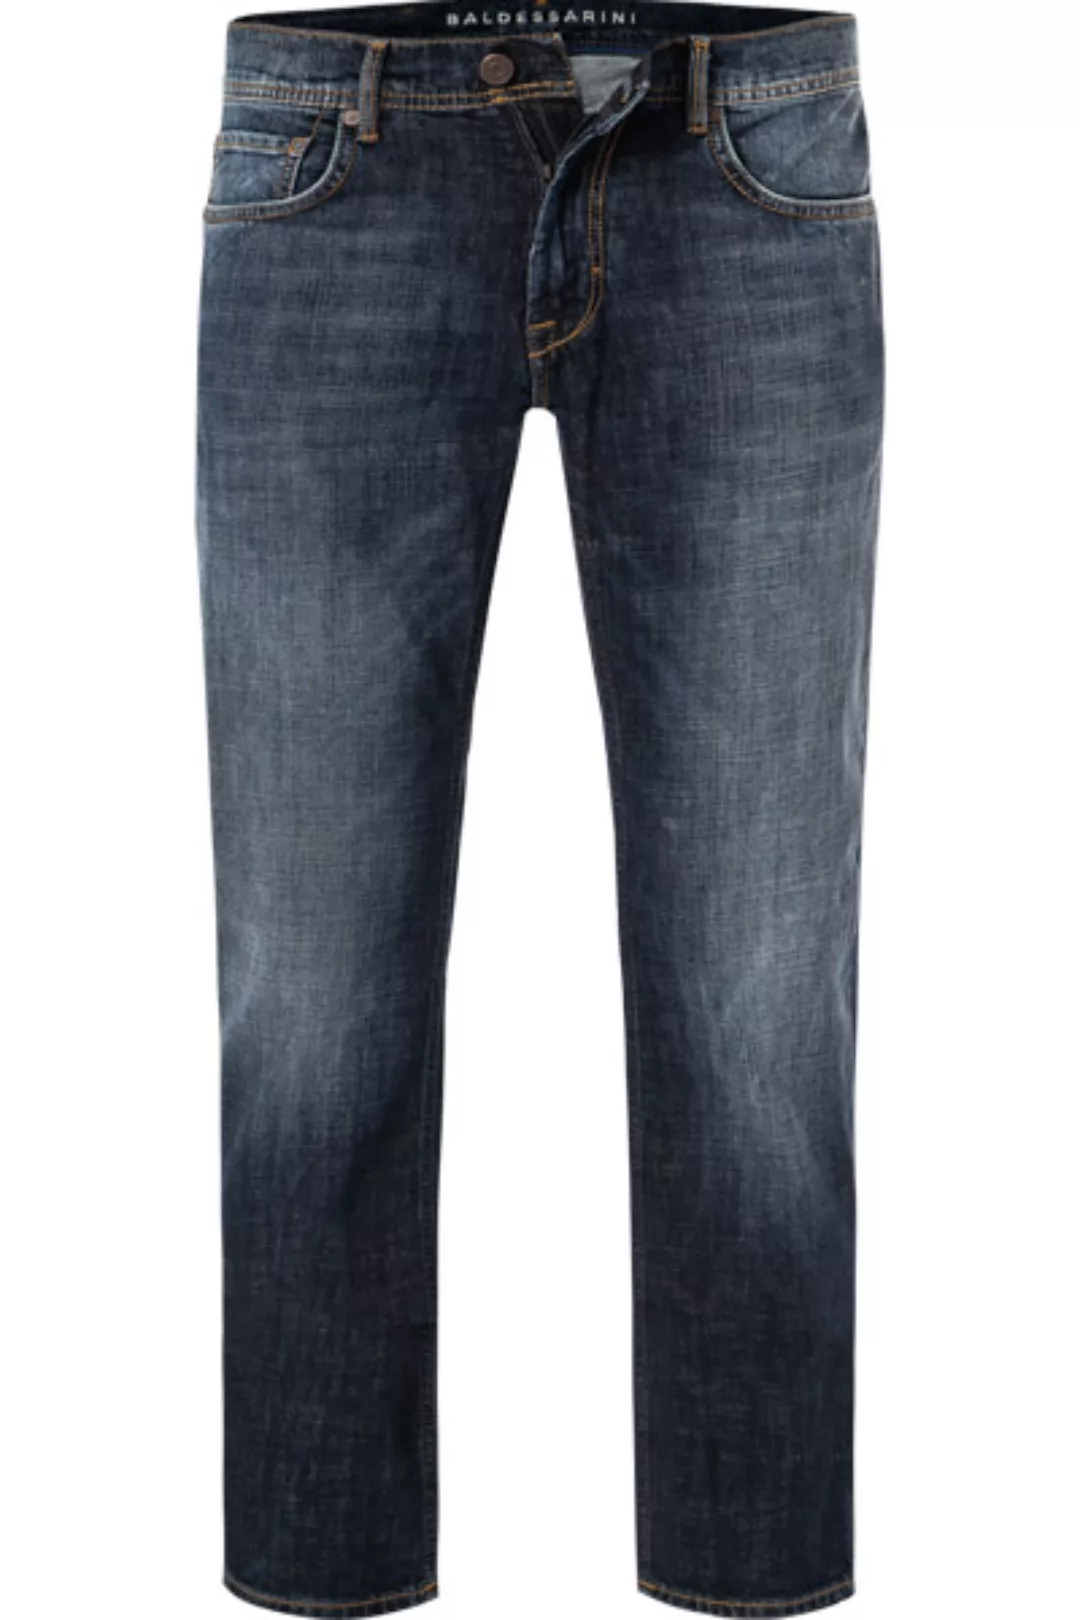 BALDESSARINI Jeans marine B1 16502.1212/6816 günstig online kaufen